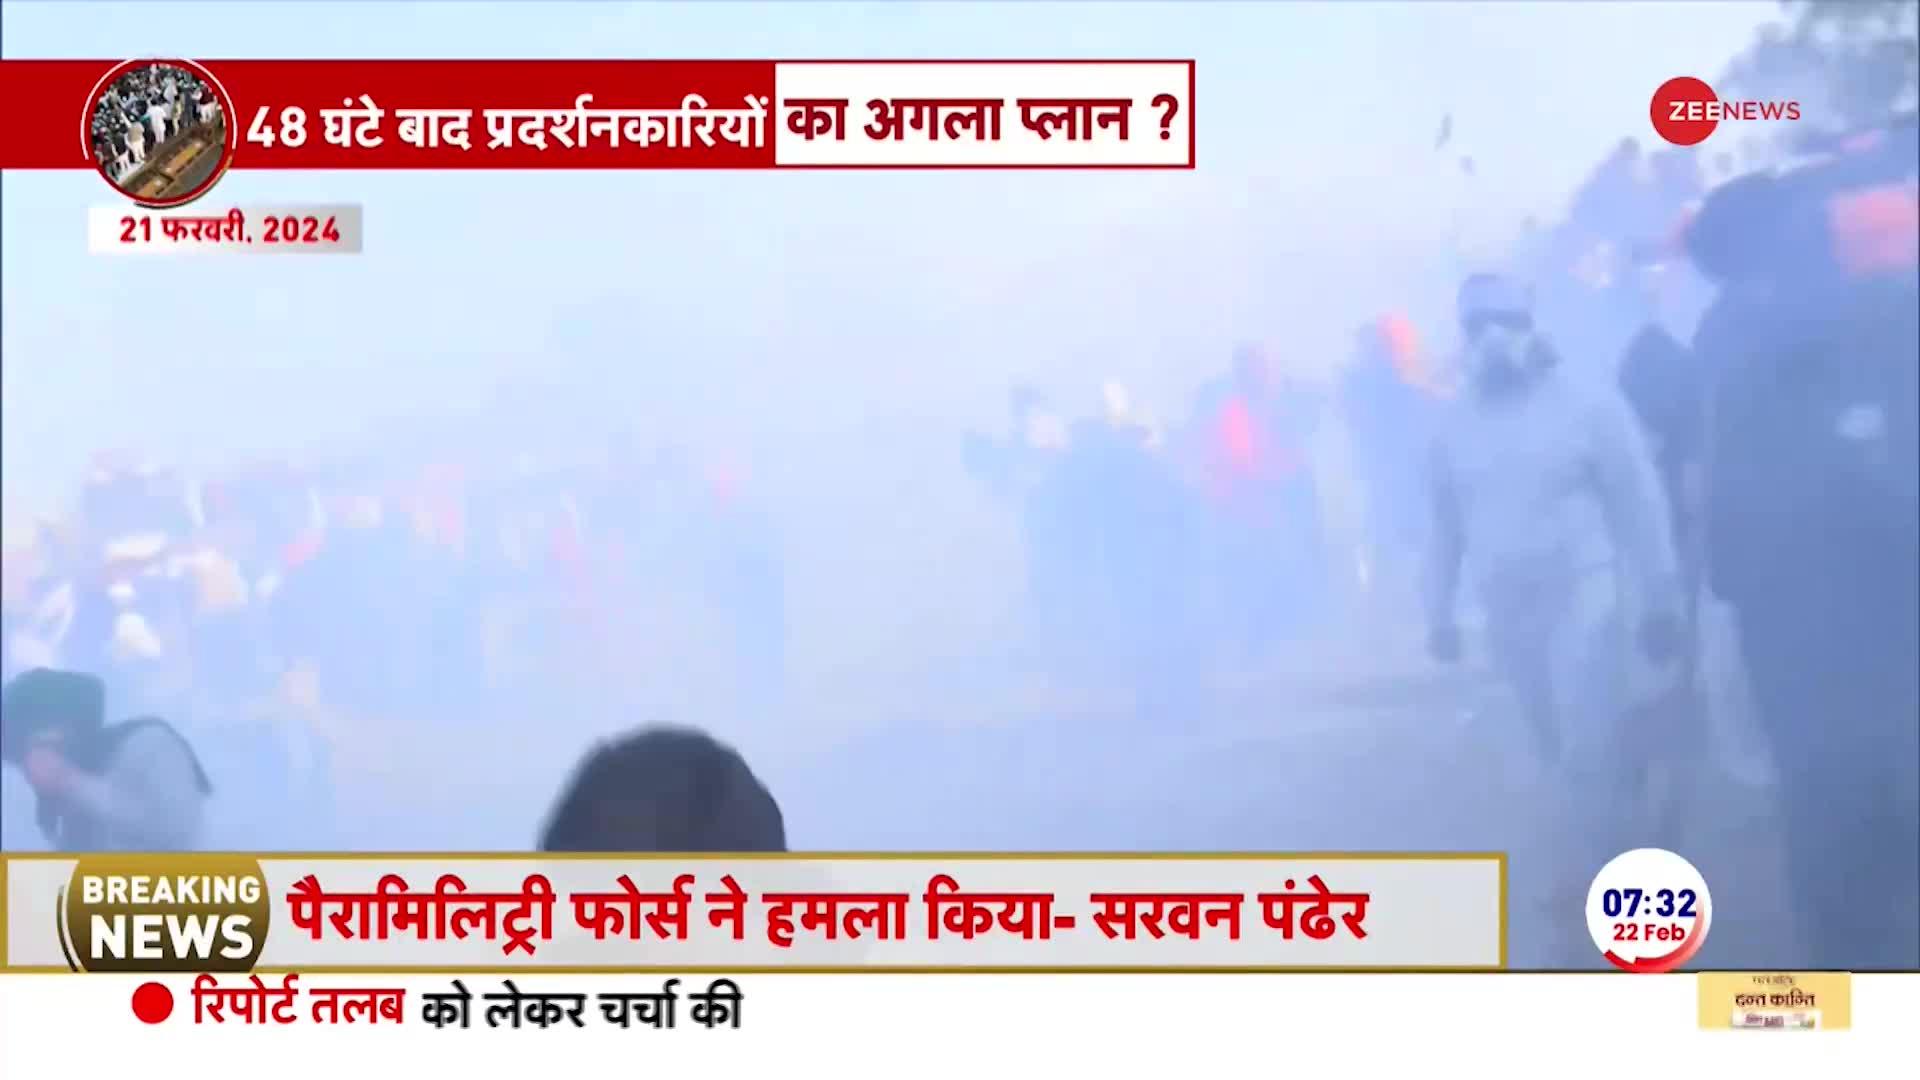 Farmers Protest Update: 48 घंटों के लिए दिल्ली कूच पर रोक, कुछ बड़ा होने वाला है?